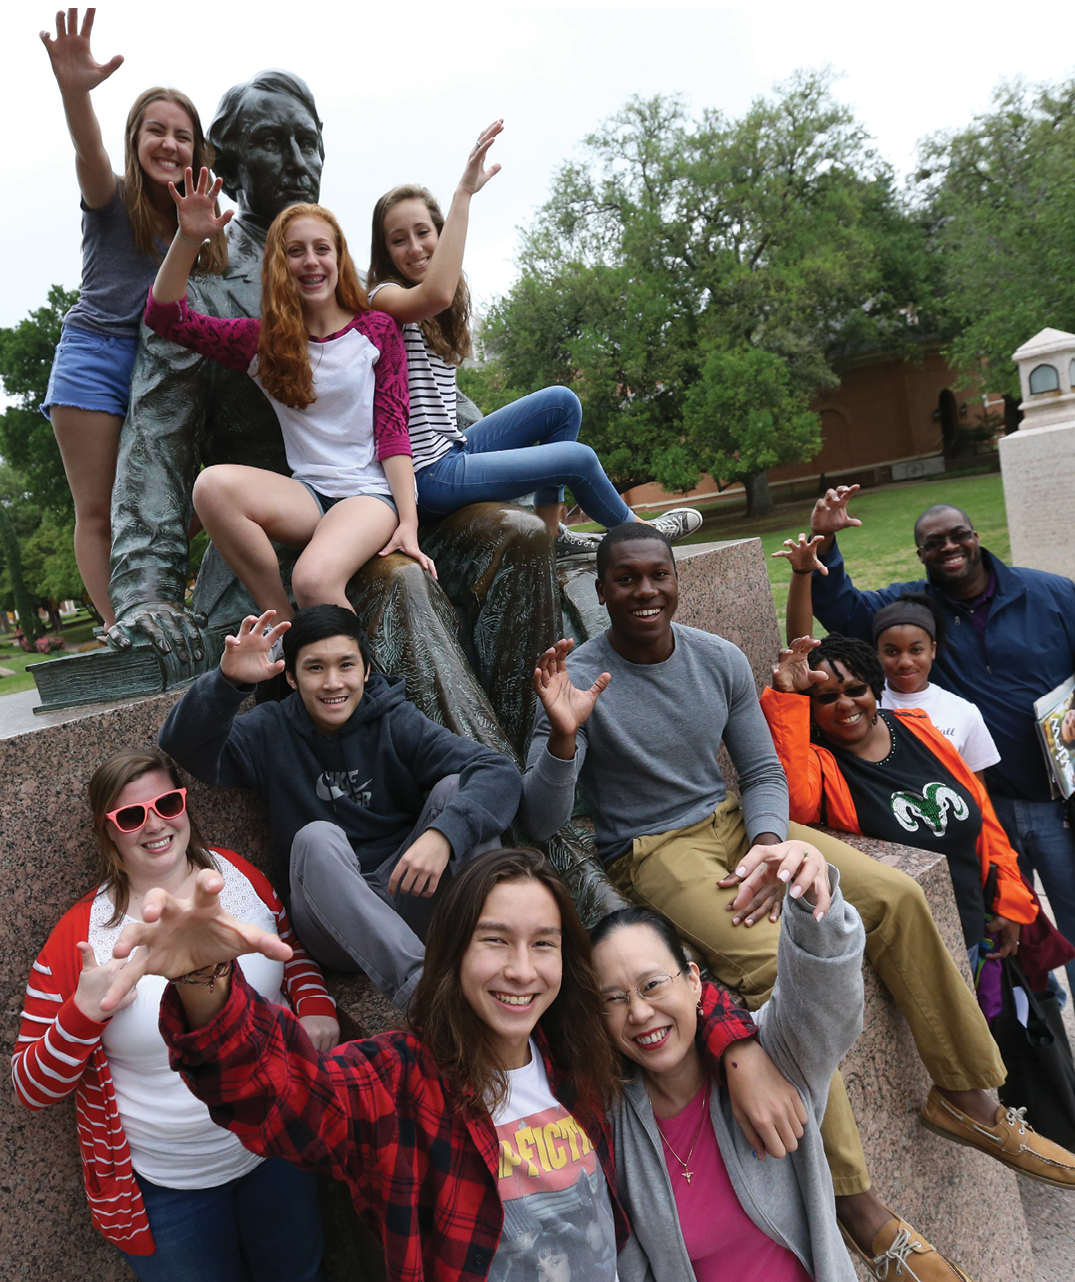 Baylor students on statue of Judge Baylor